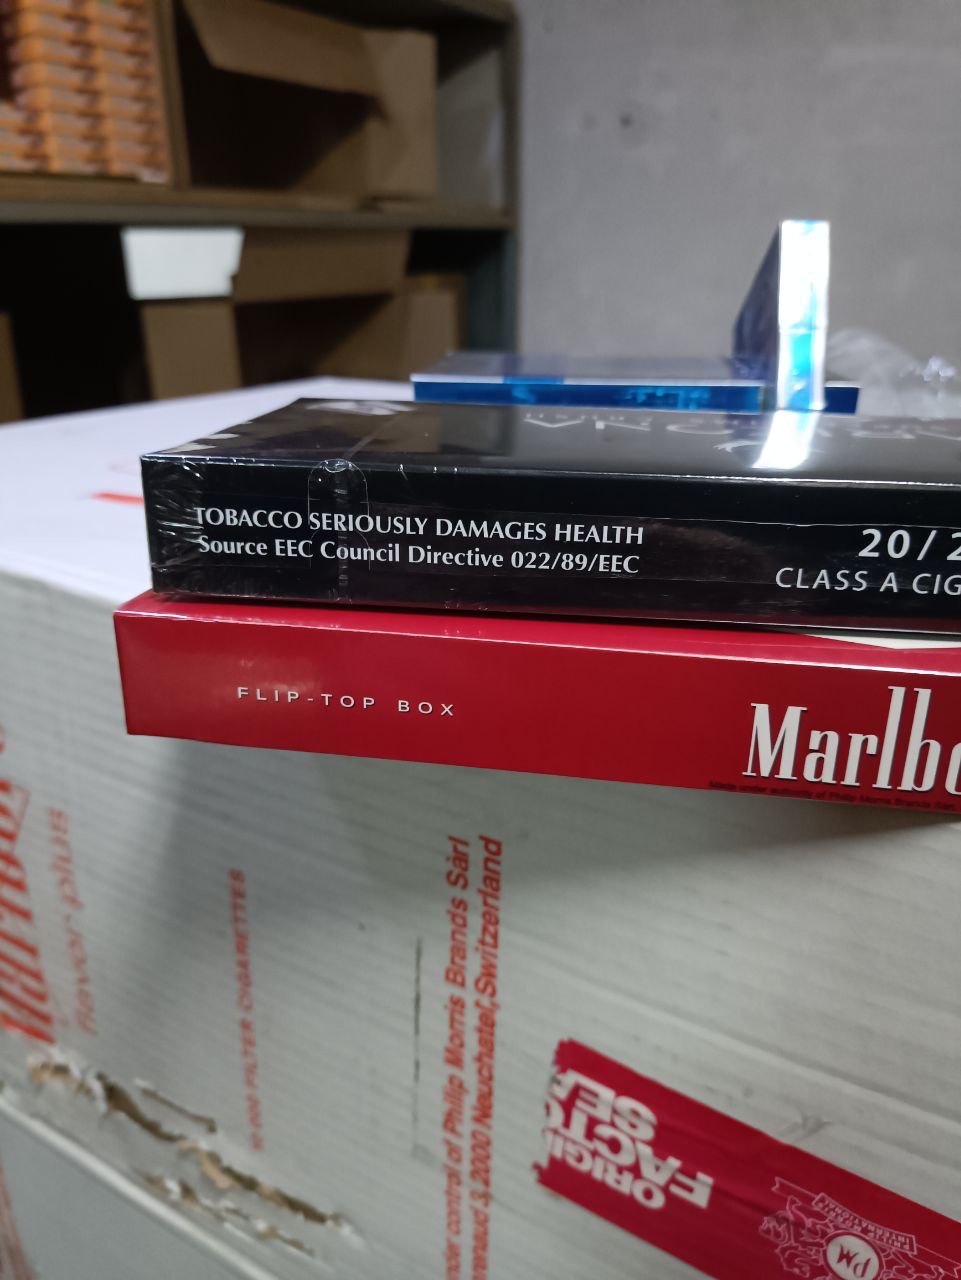 Пачки нелегальных сигарет стоимостью 12 млн рублей обнаружили на складе в Тольятти